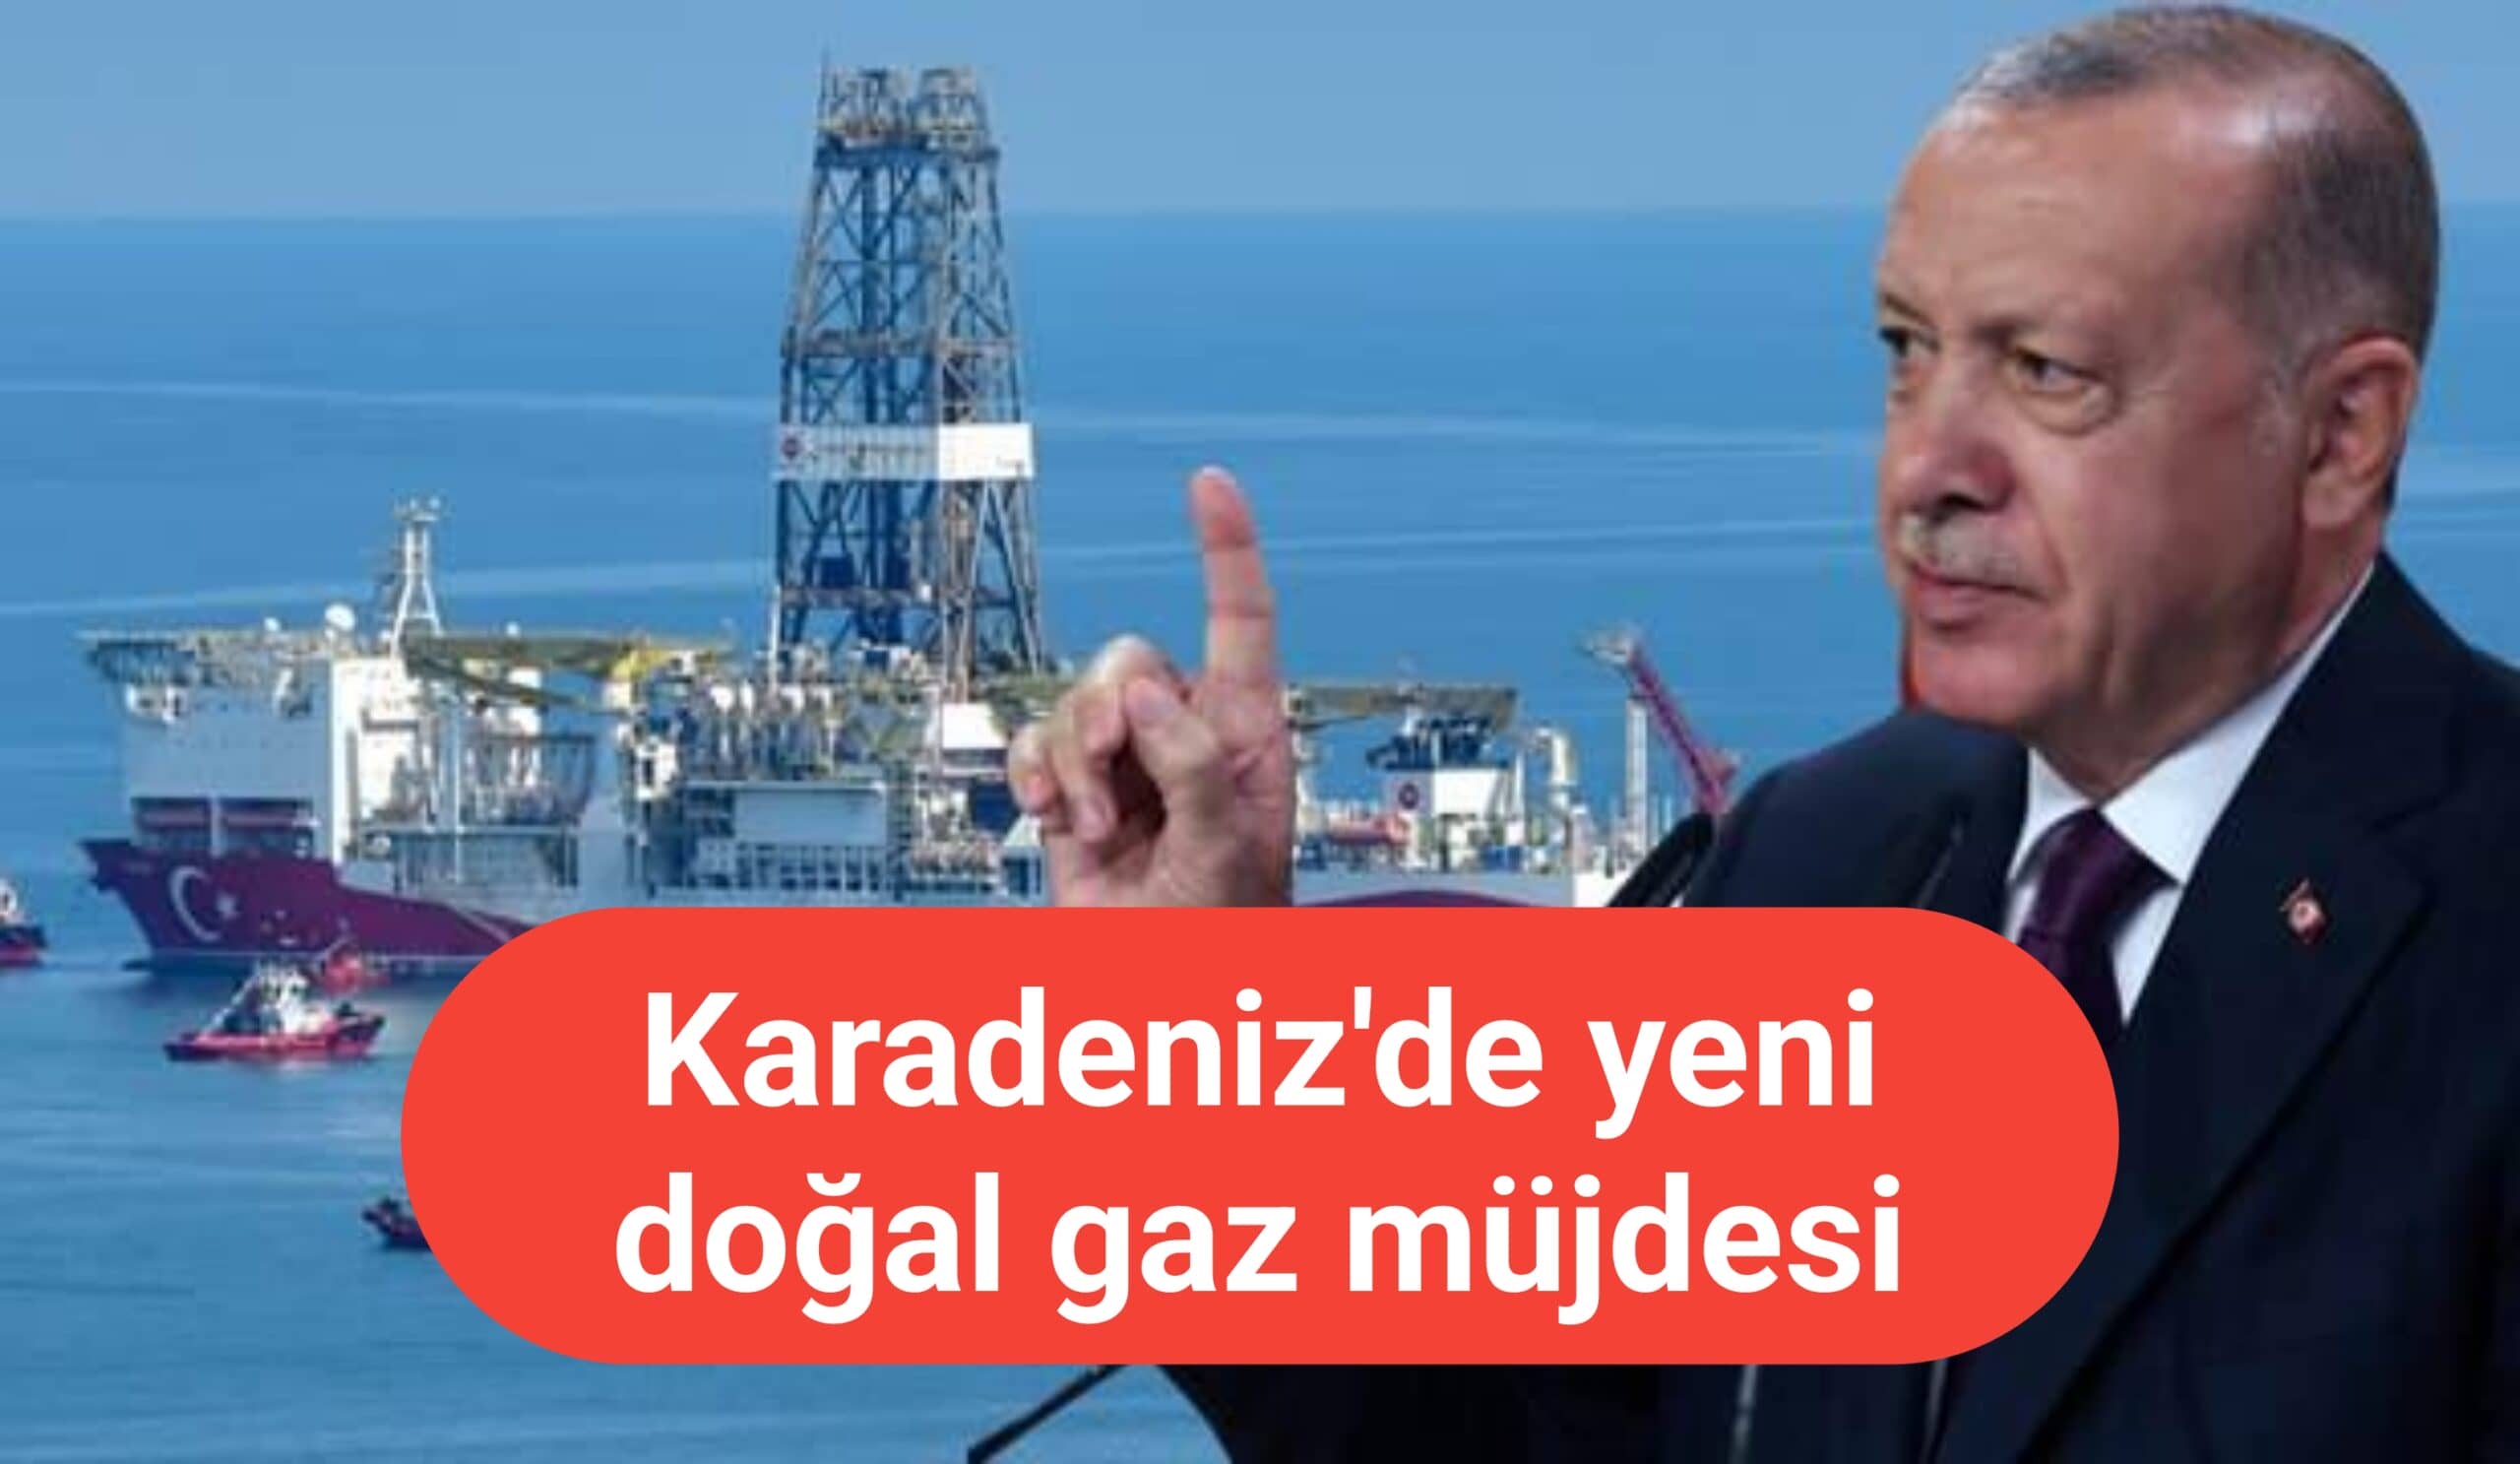 Karadeniz'de 58 milyar dolarlık doğal gaz müjdesi